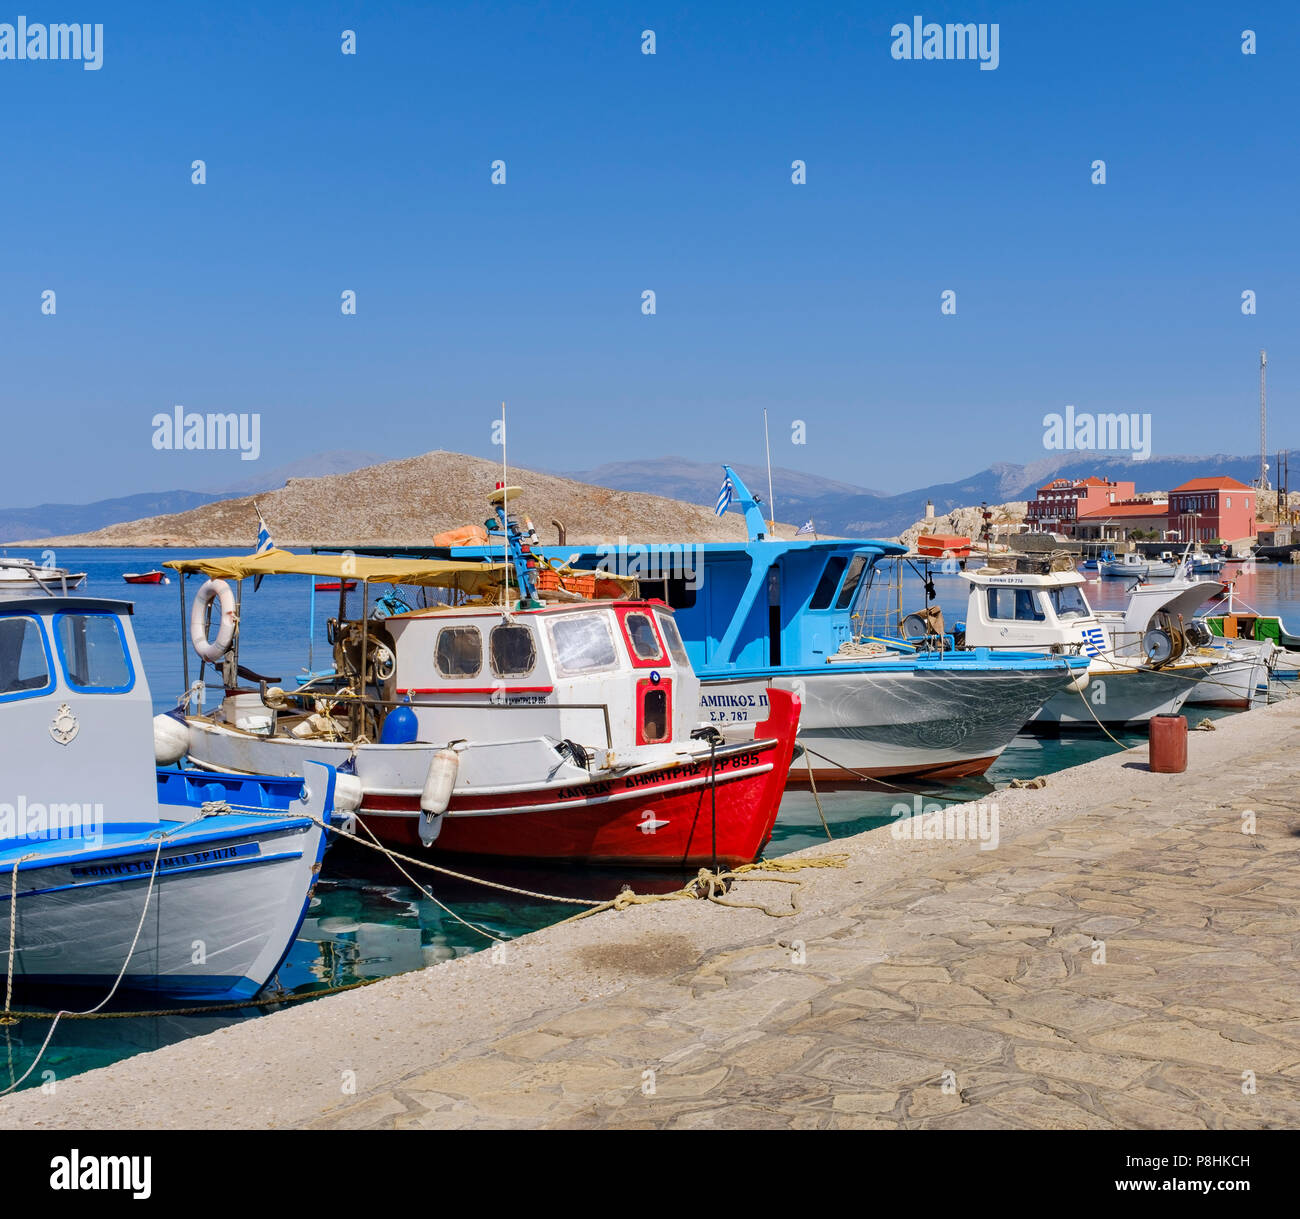 Bateau rouge au milieu d'une ligne de bateaux dans le port de Halki. Banque D'Images